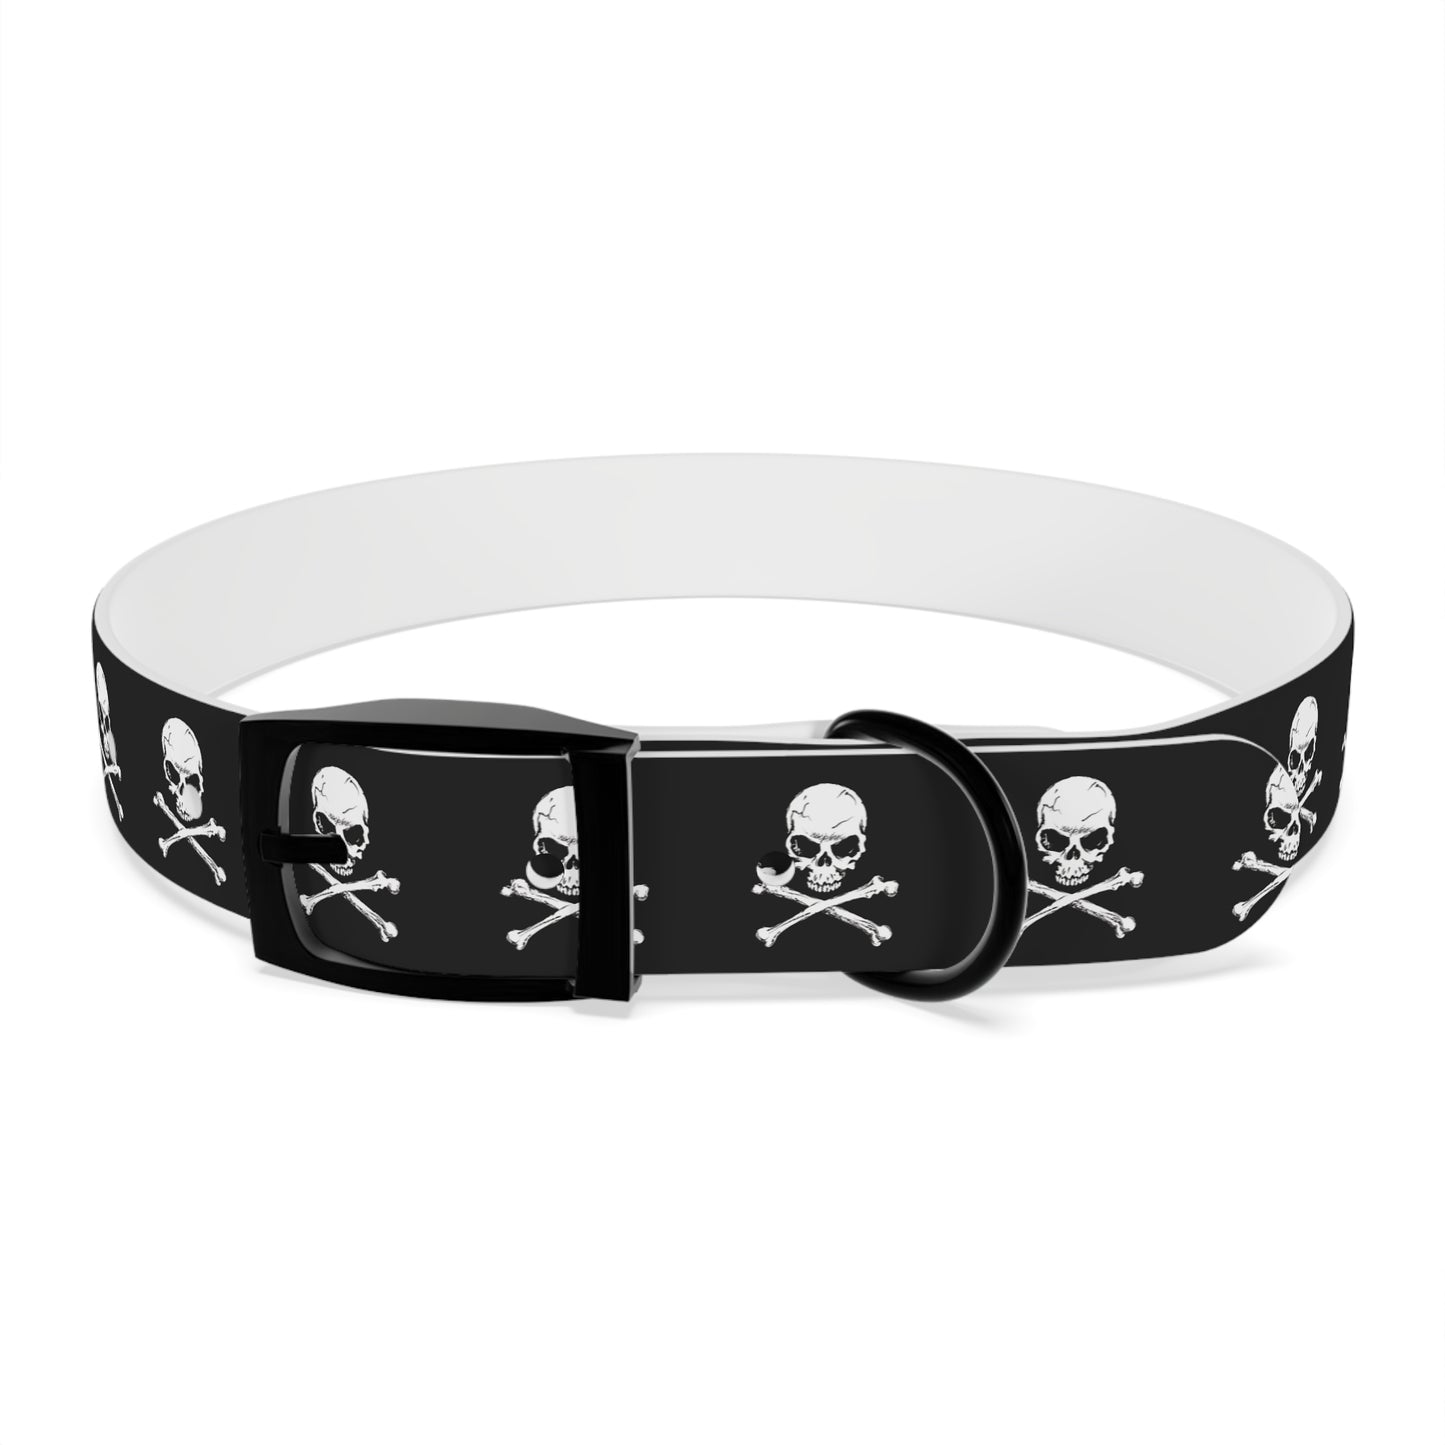 Skull & Crossbones Dog Collar